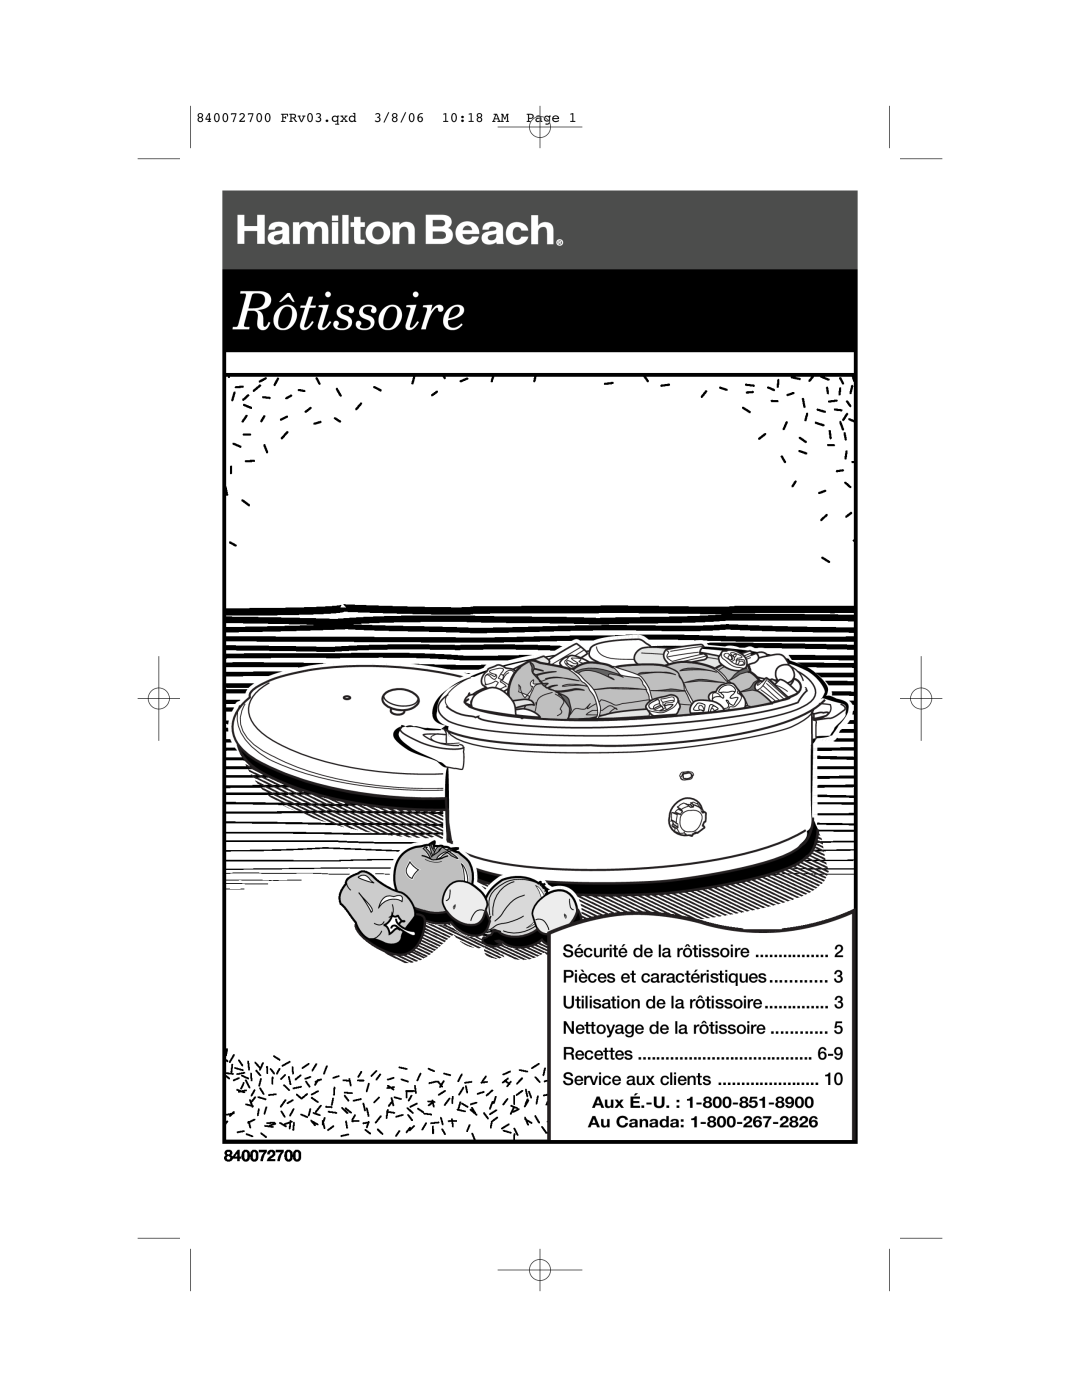 Hamilton Beach 32600s Pièces et caractéristiques, Nettoyage de la rôtissoire, Rôtissoire, Sécurité de la rôtissoire, Page 